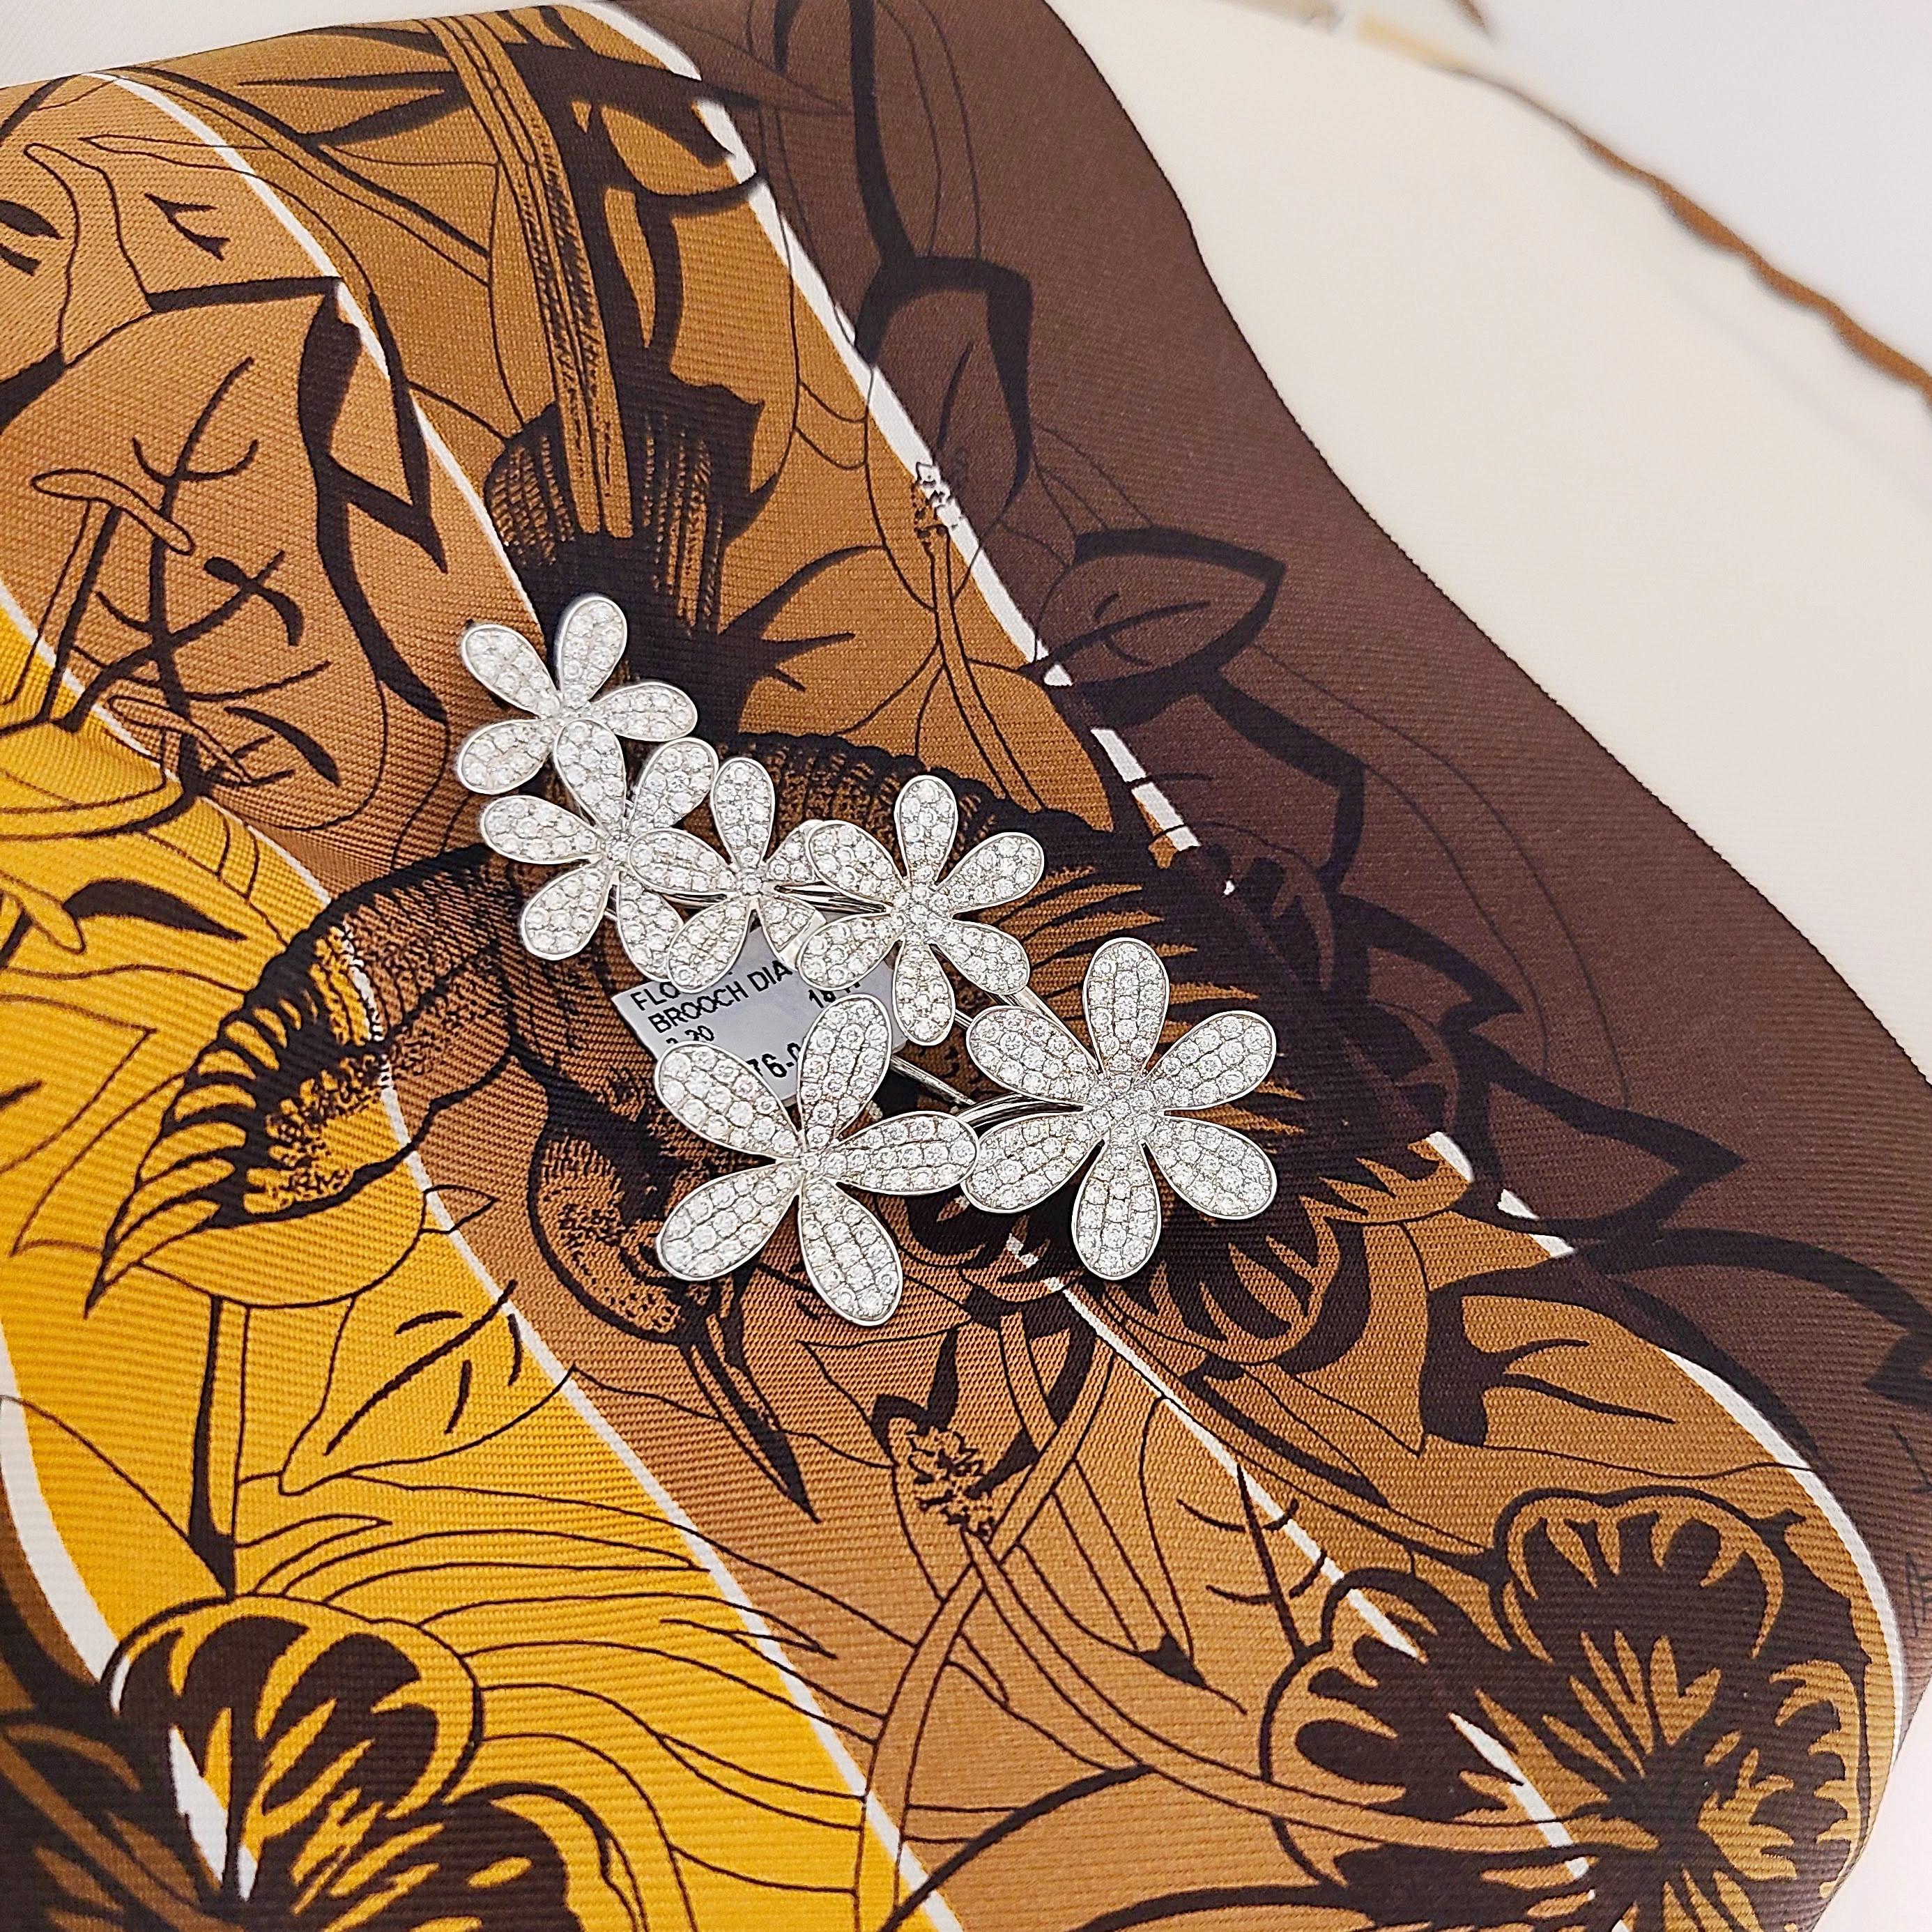 Diese elegante Brosche aus 18 Karat Weißgold von Stenzhorn,  ist mit sechs mit Diamanten besetzten Blumen gestaltet. Die Brosche misst 2 1/2  in Länge x 1 3/8